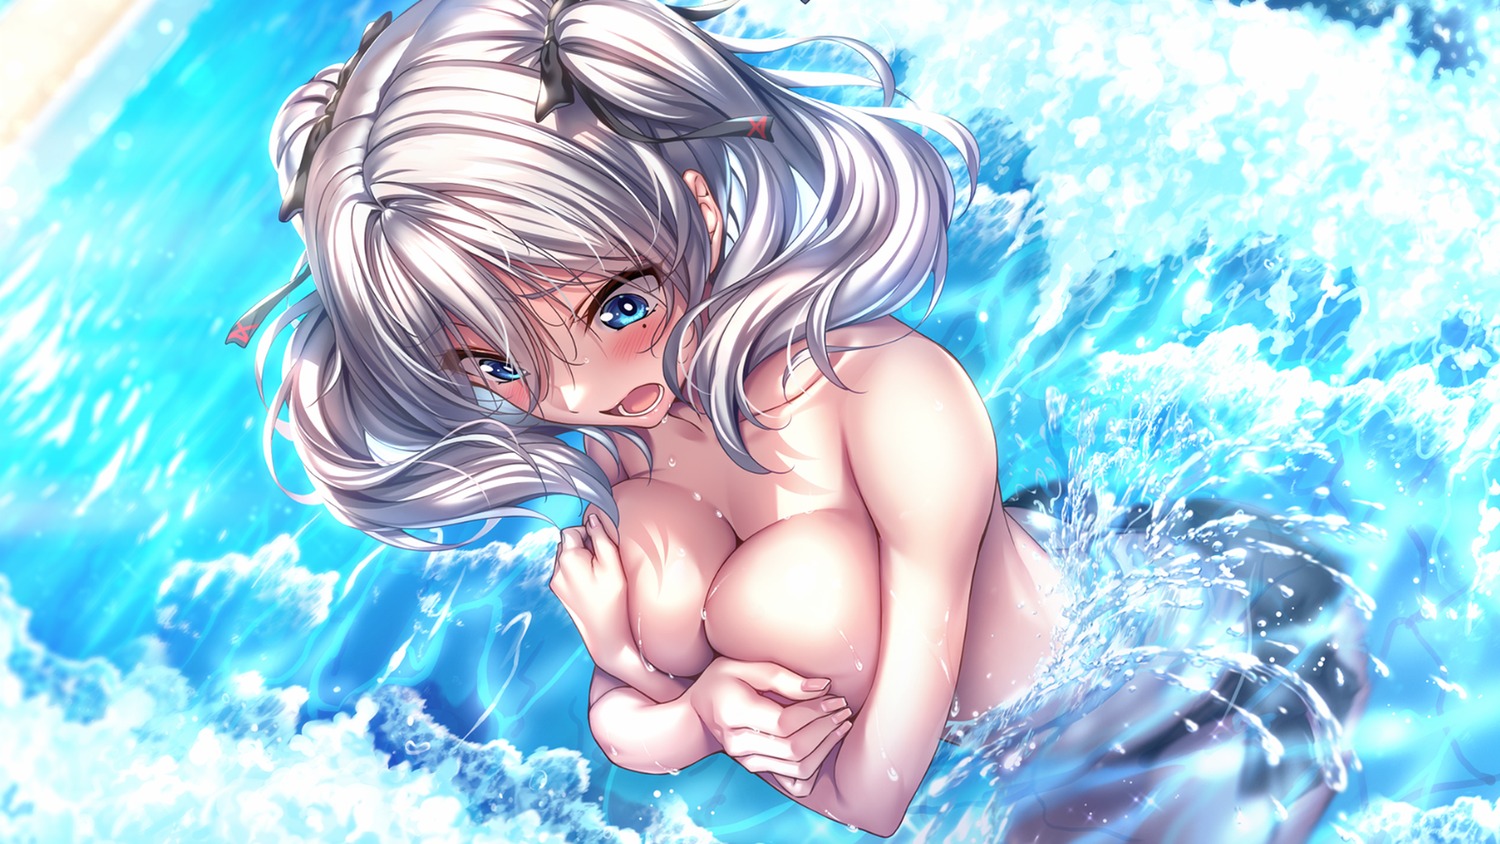 amakano_2+ azarashi_soft bikini breast_hold game_cg jigokudani_sara piromizu swimsuits topless wet